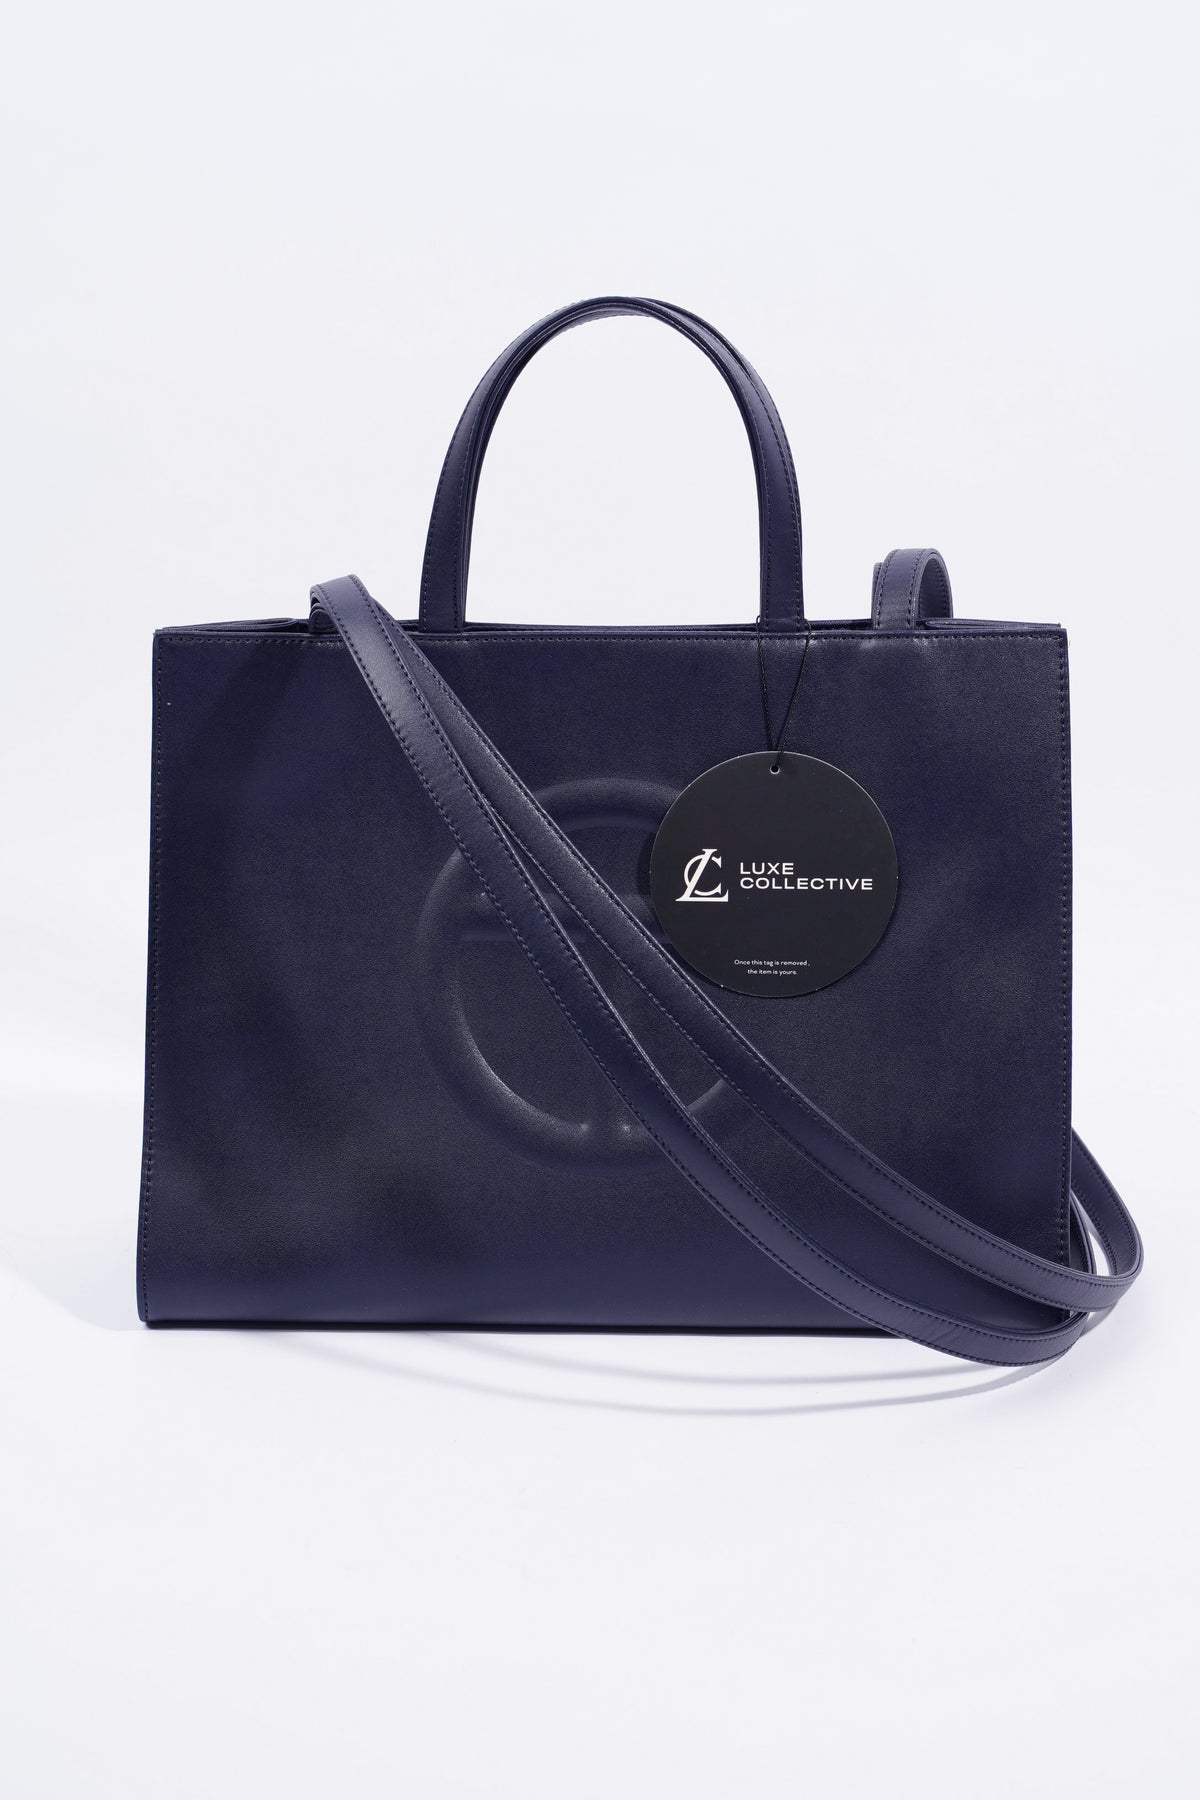 Telfar Shopping Bag Navy Medium – Luxe Collective